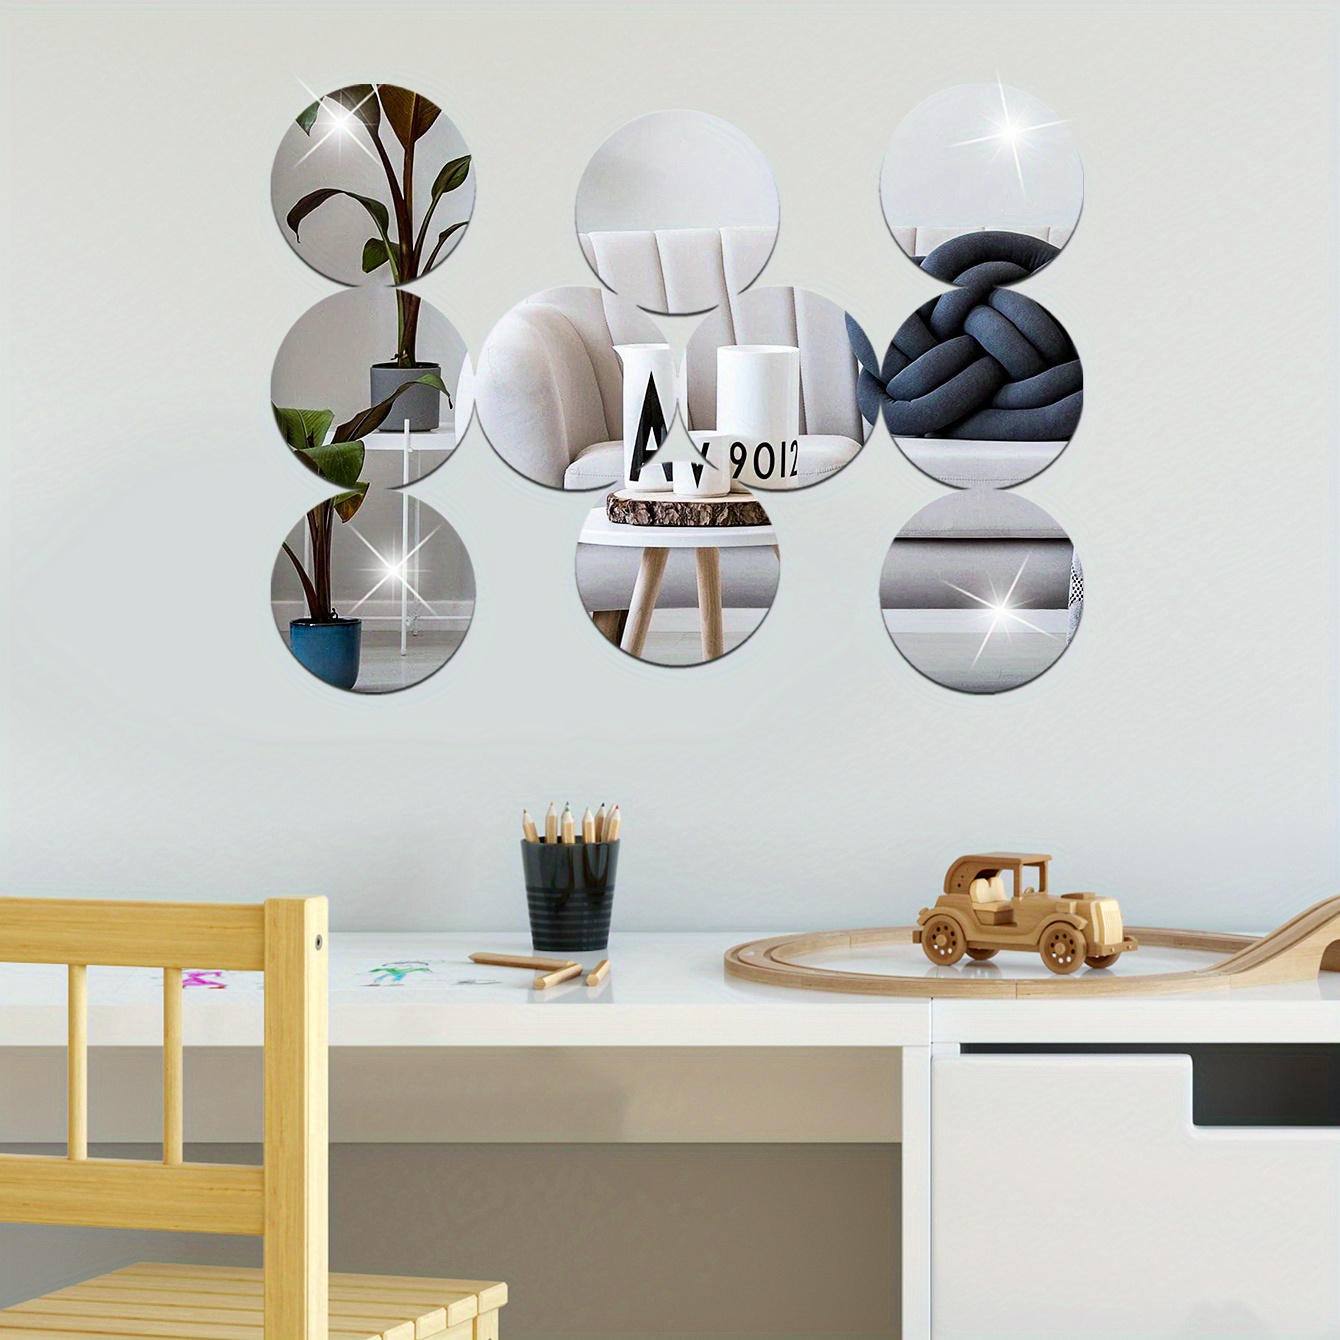 SelfTek 30 pegatinas de pared de espejo acrílico autoadhesivas, removibles,  redondas, espejos, adhesivos de pared, para bricolaje, hogar, arte